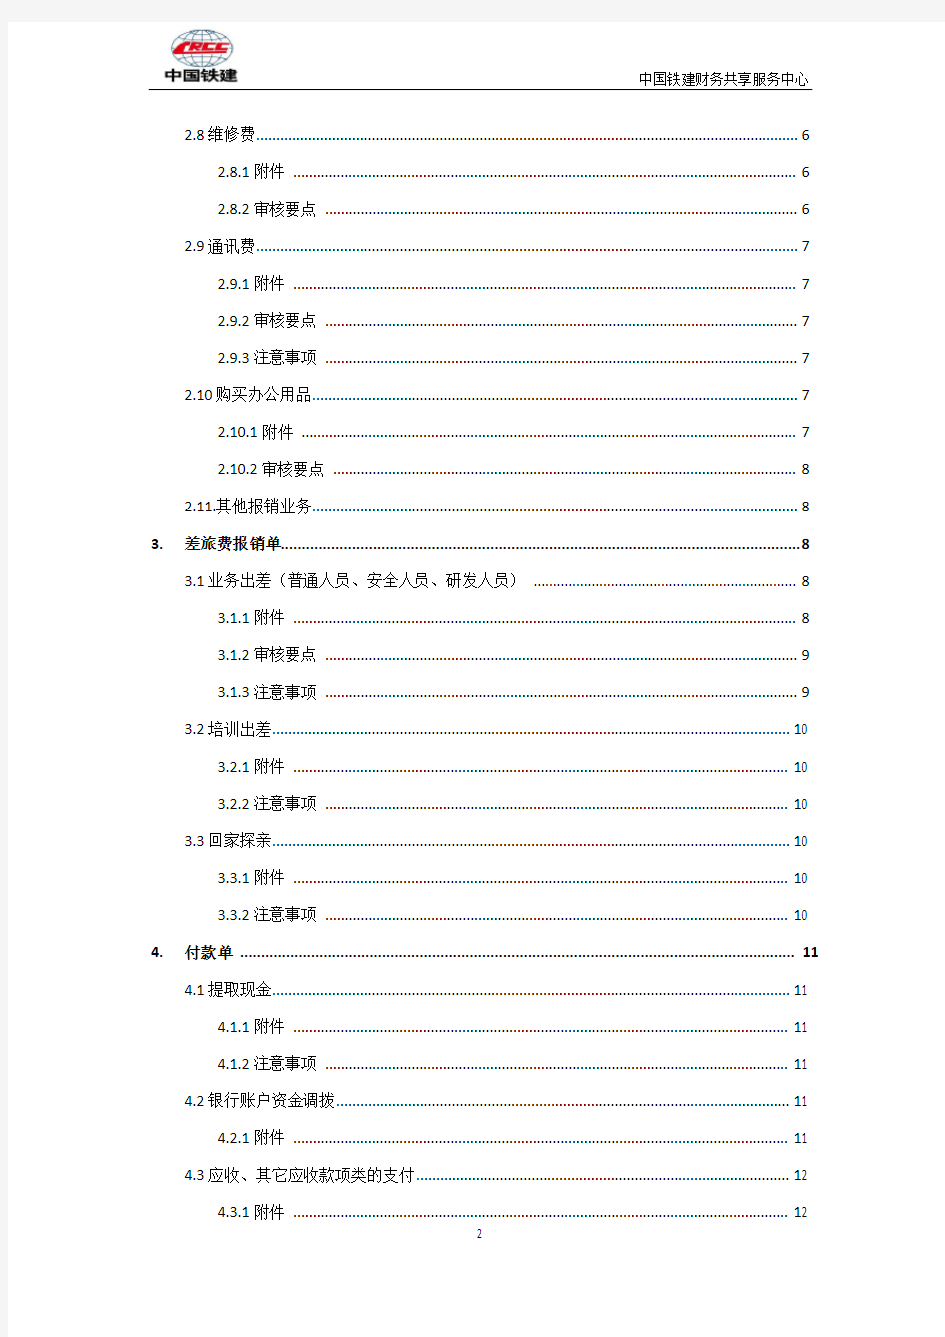 中国铁建共享服务中心单据审核标准